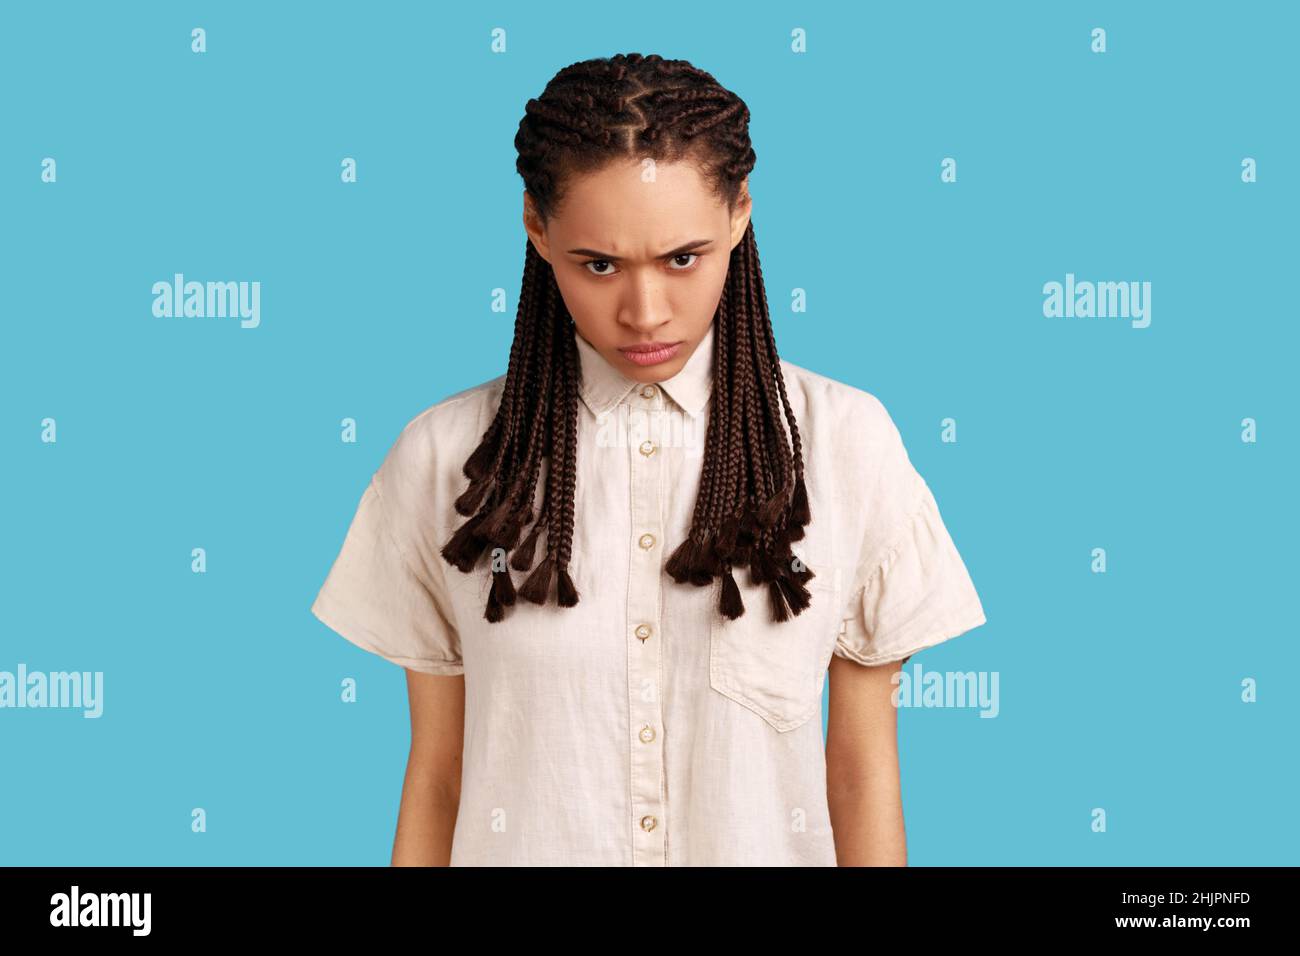 Porträt einer aggressiven Frau mit schwarzen Dreadlocks, mit Irritationen schielt Gesicht, ärgerlich über etwas, trägt weißes Hemd. Innenaufnahme des Studios isoliert auf blauem Hintergrund. Stockfoto